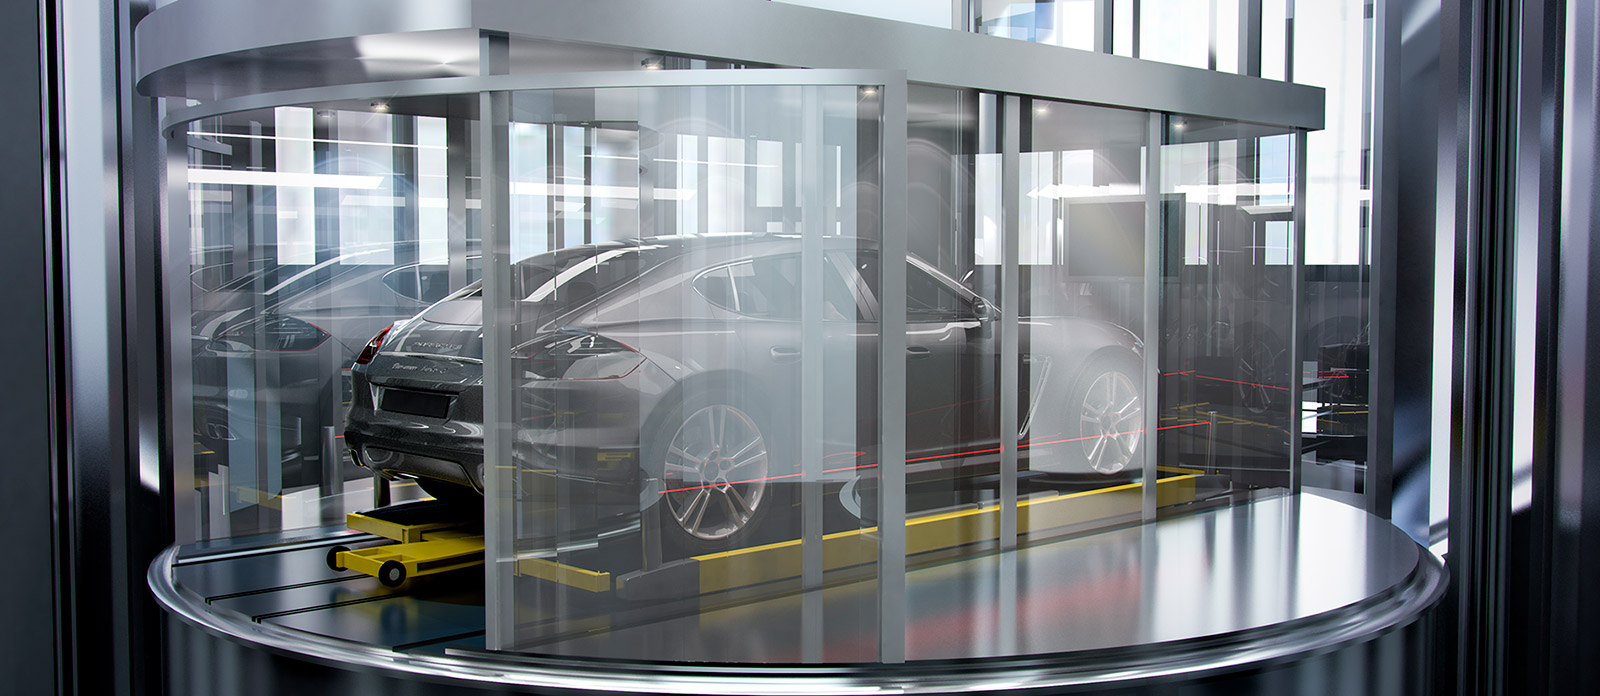 Car elevator modeling render 3d